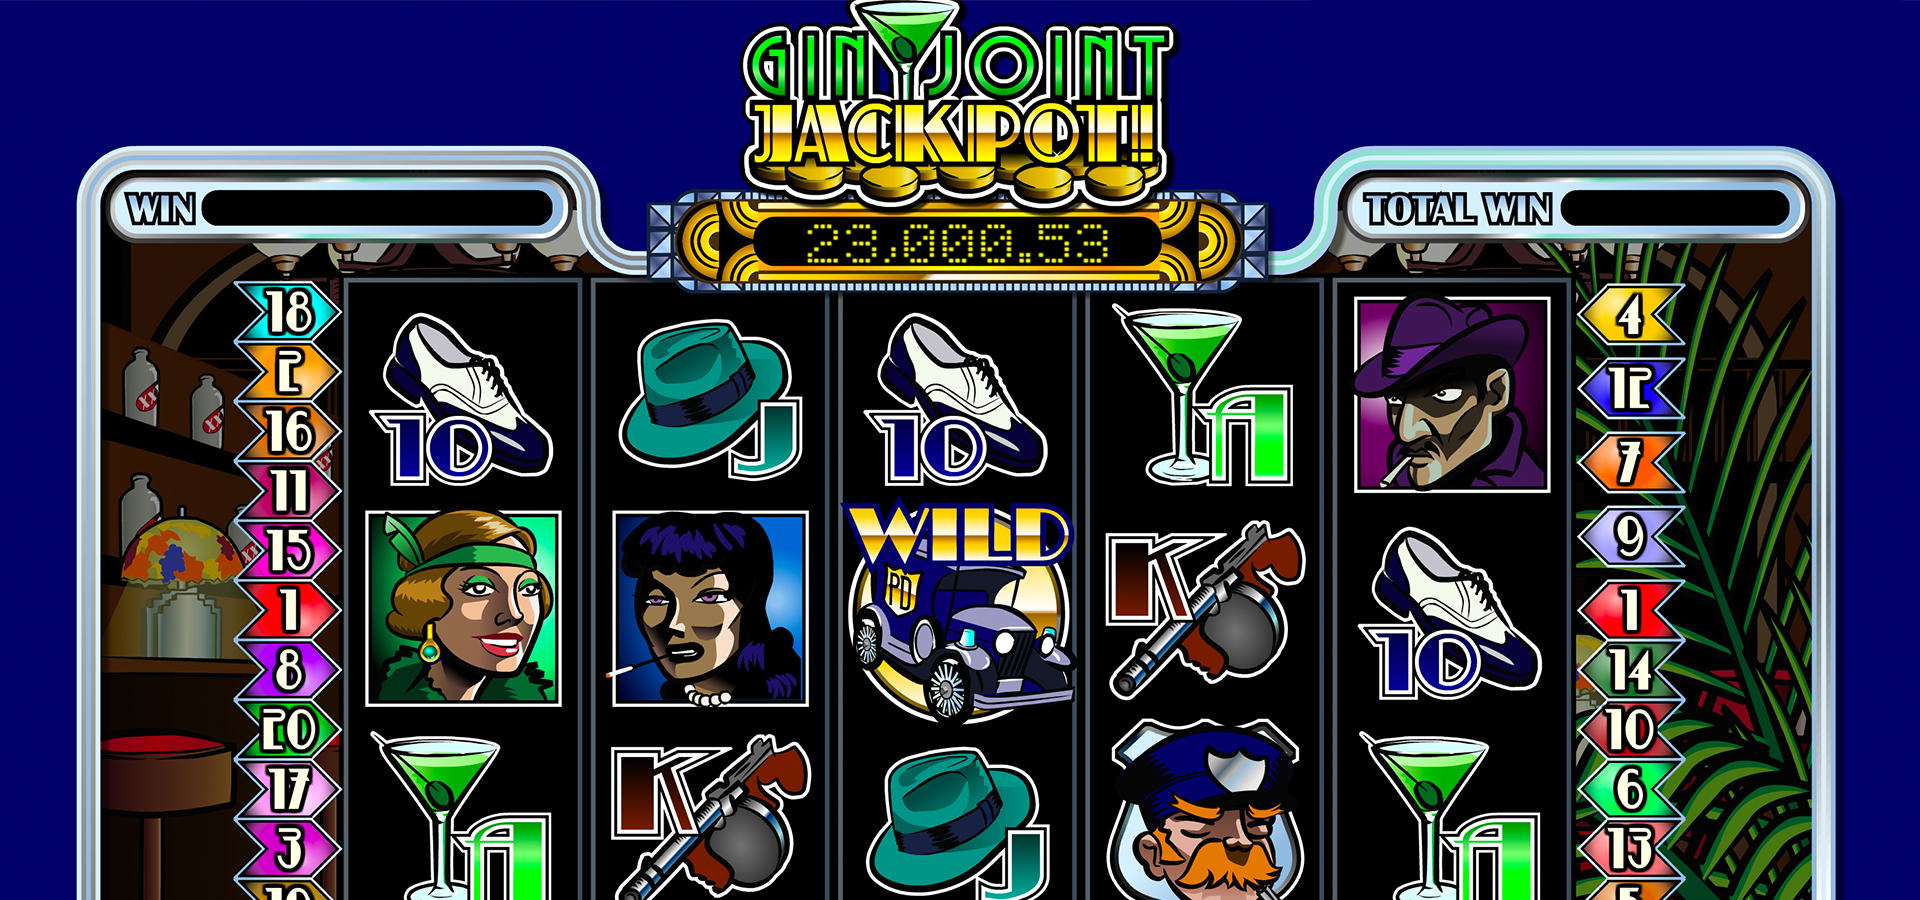 Gin Joint Jackpot Slot Machine